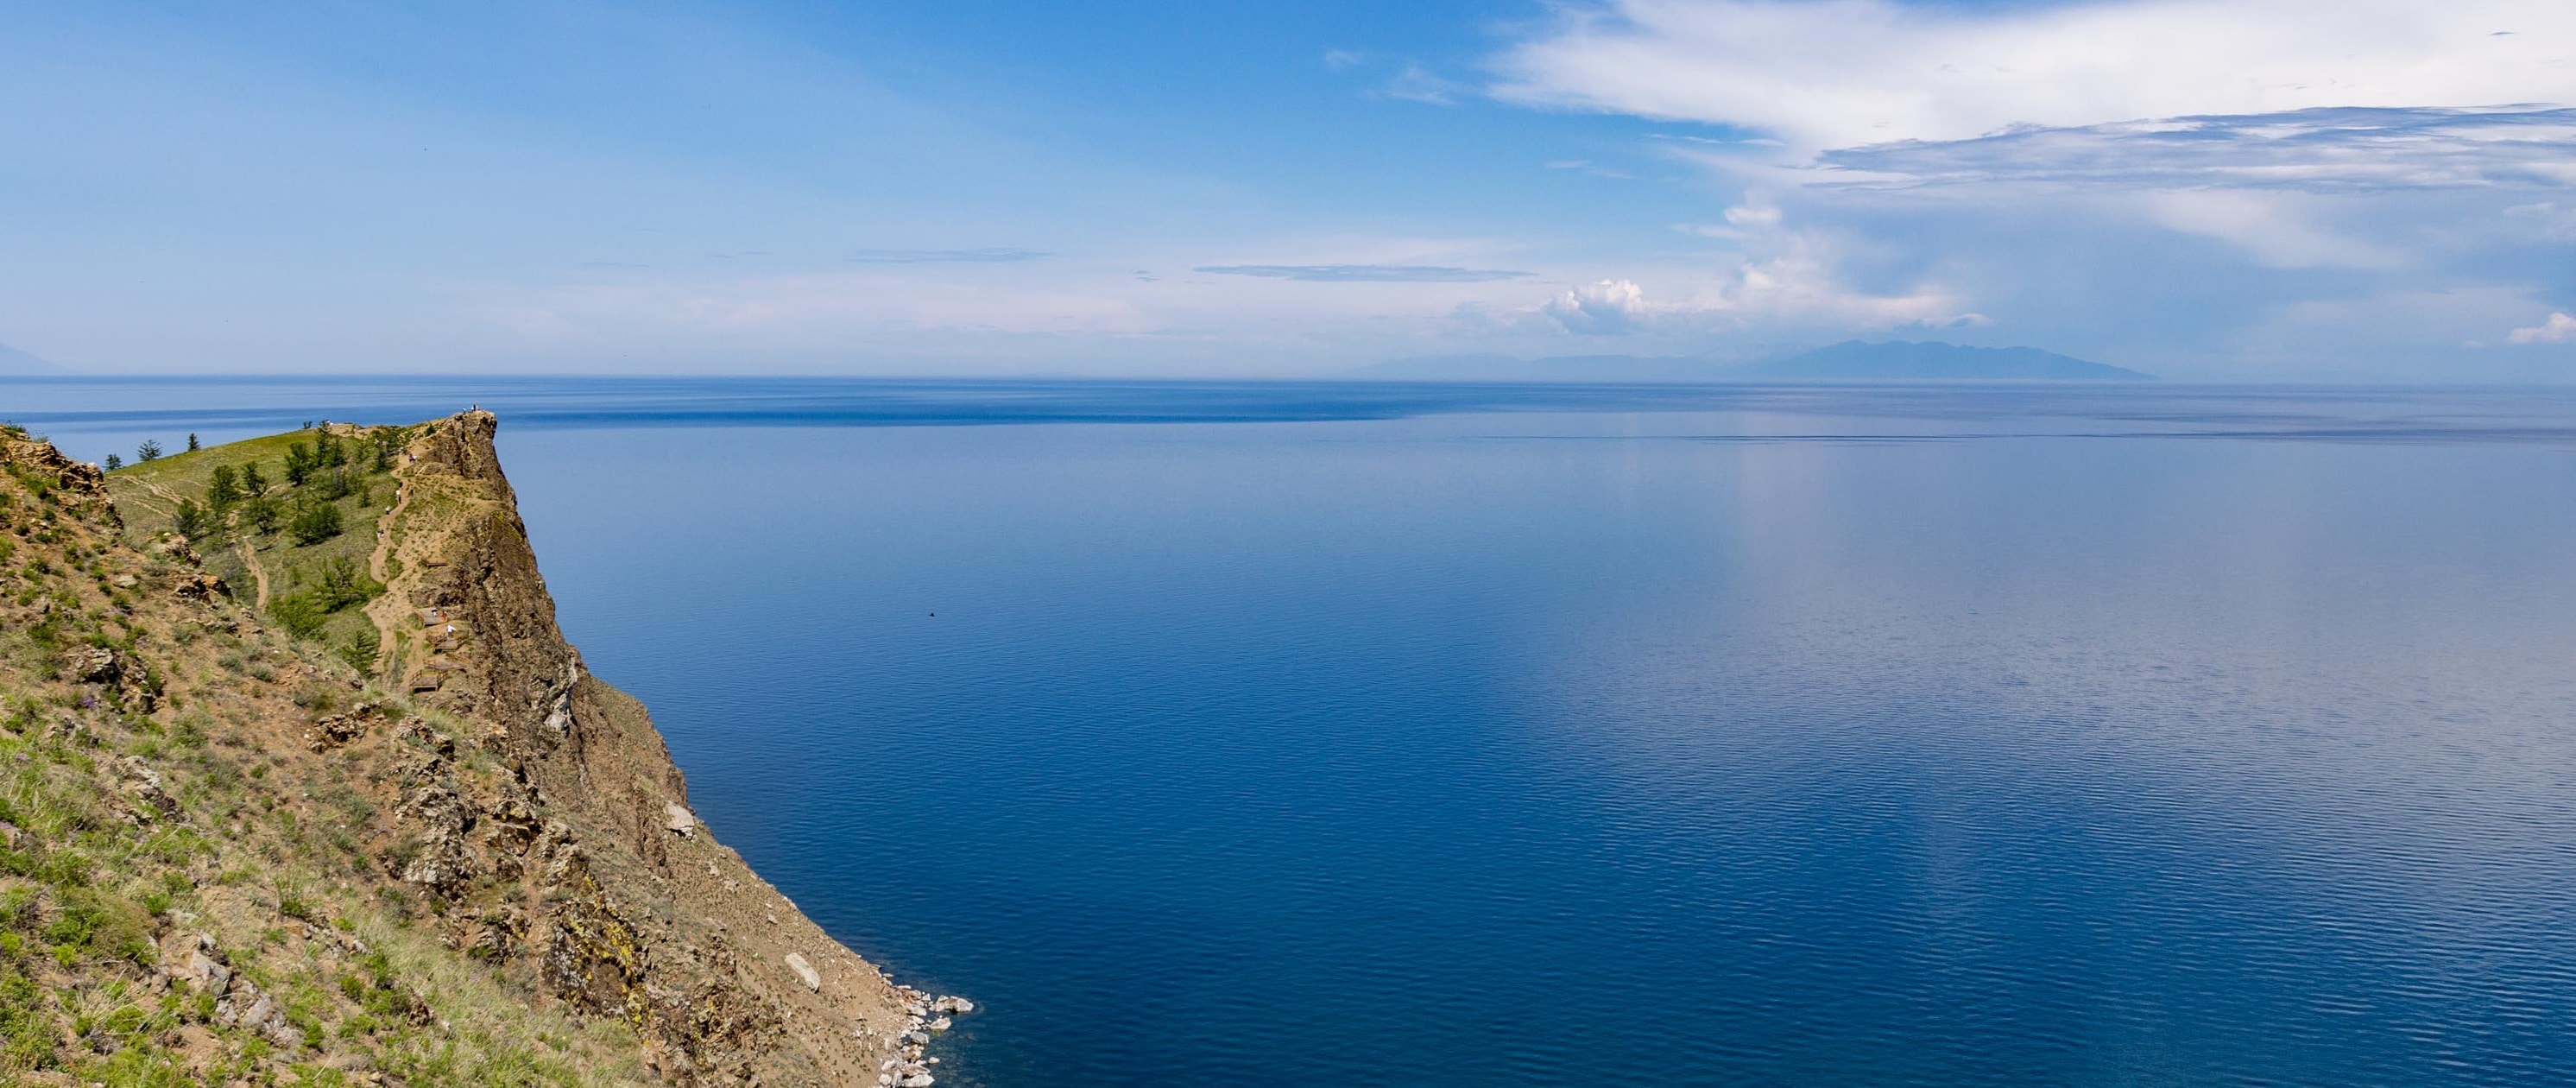 Jezioro Bajkał. Atrakcje nad okiem Syberii, najgłębszym i najczystszym jeziorem świata.